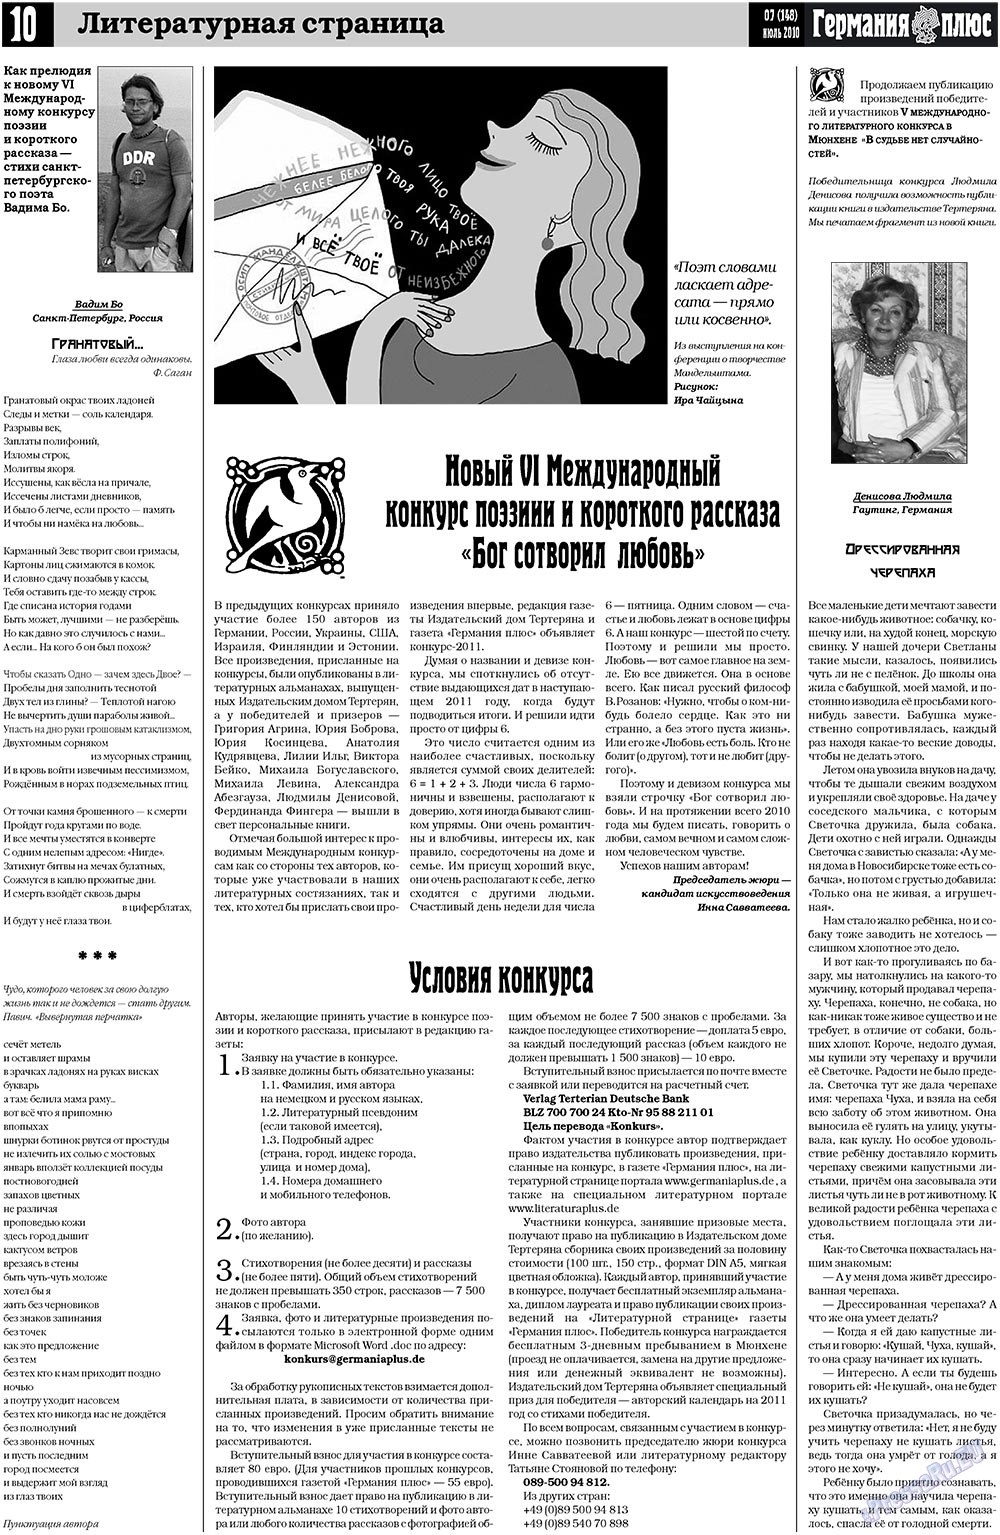 Германия плюс (газета). 2010 год, номер 7, стр. 10